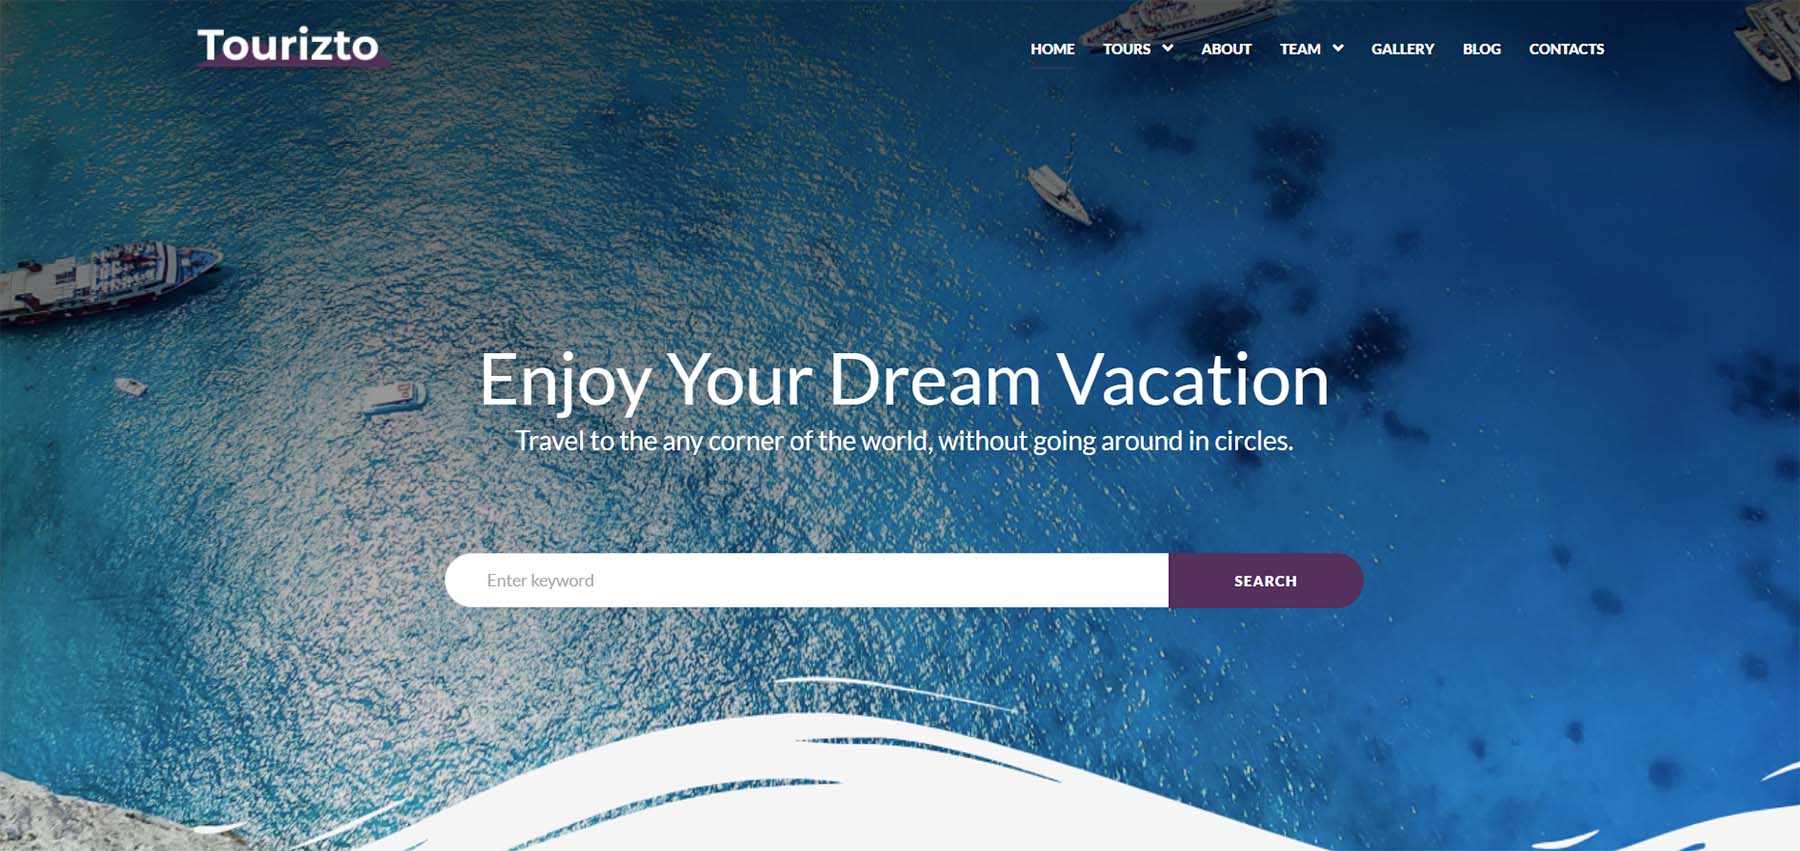 Tourizto - Motyw WordPress Elementor firmy turystycznej